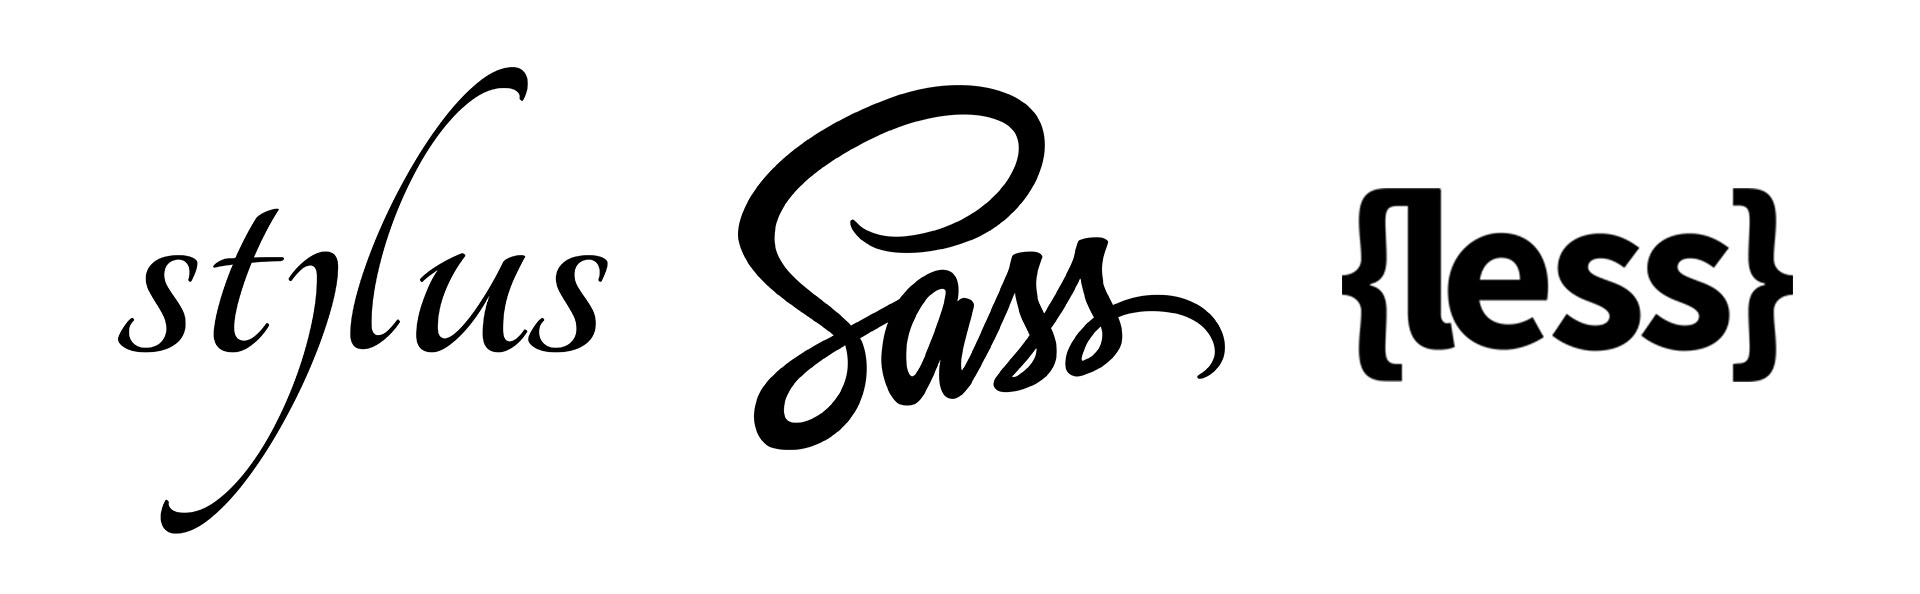 Logos dos pré-processadores Stylus, SASS e less.